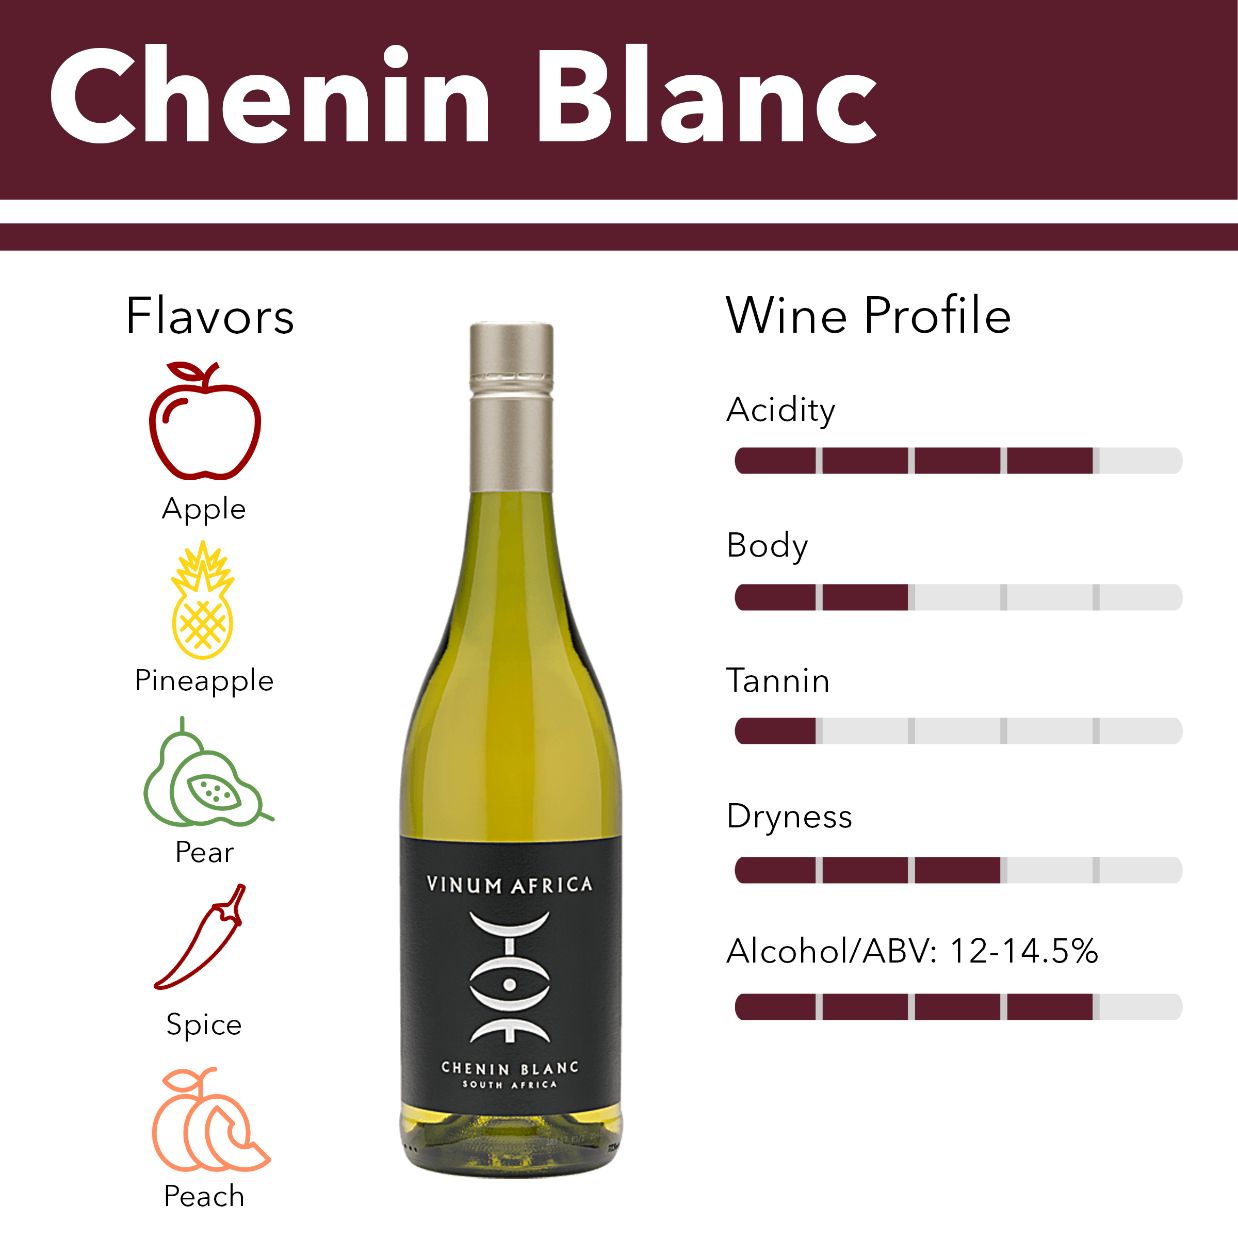 Chenin Blanc wine flavor profile